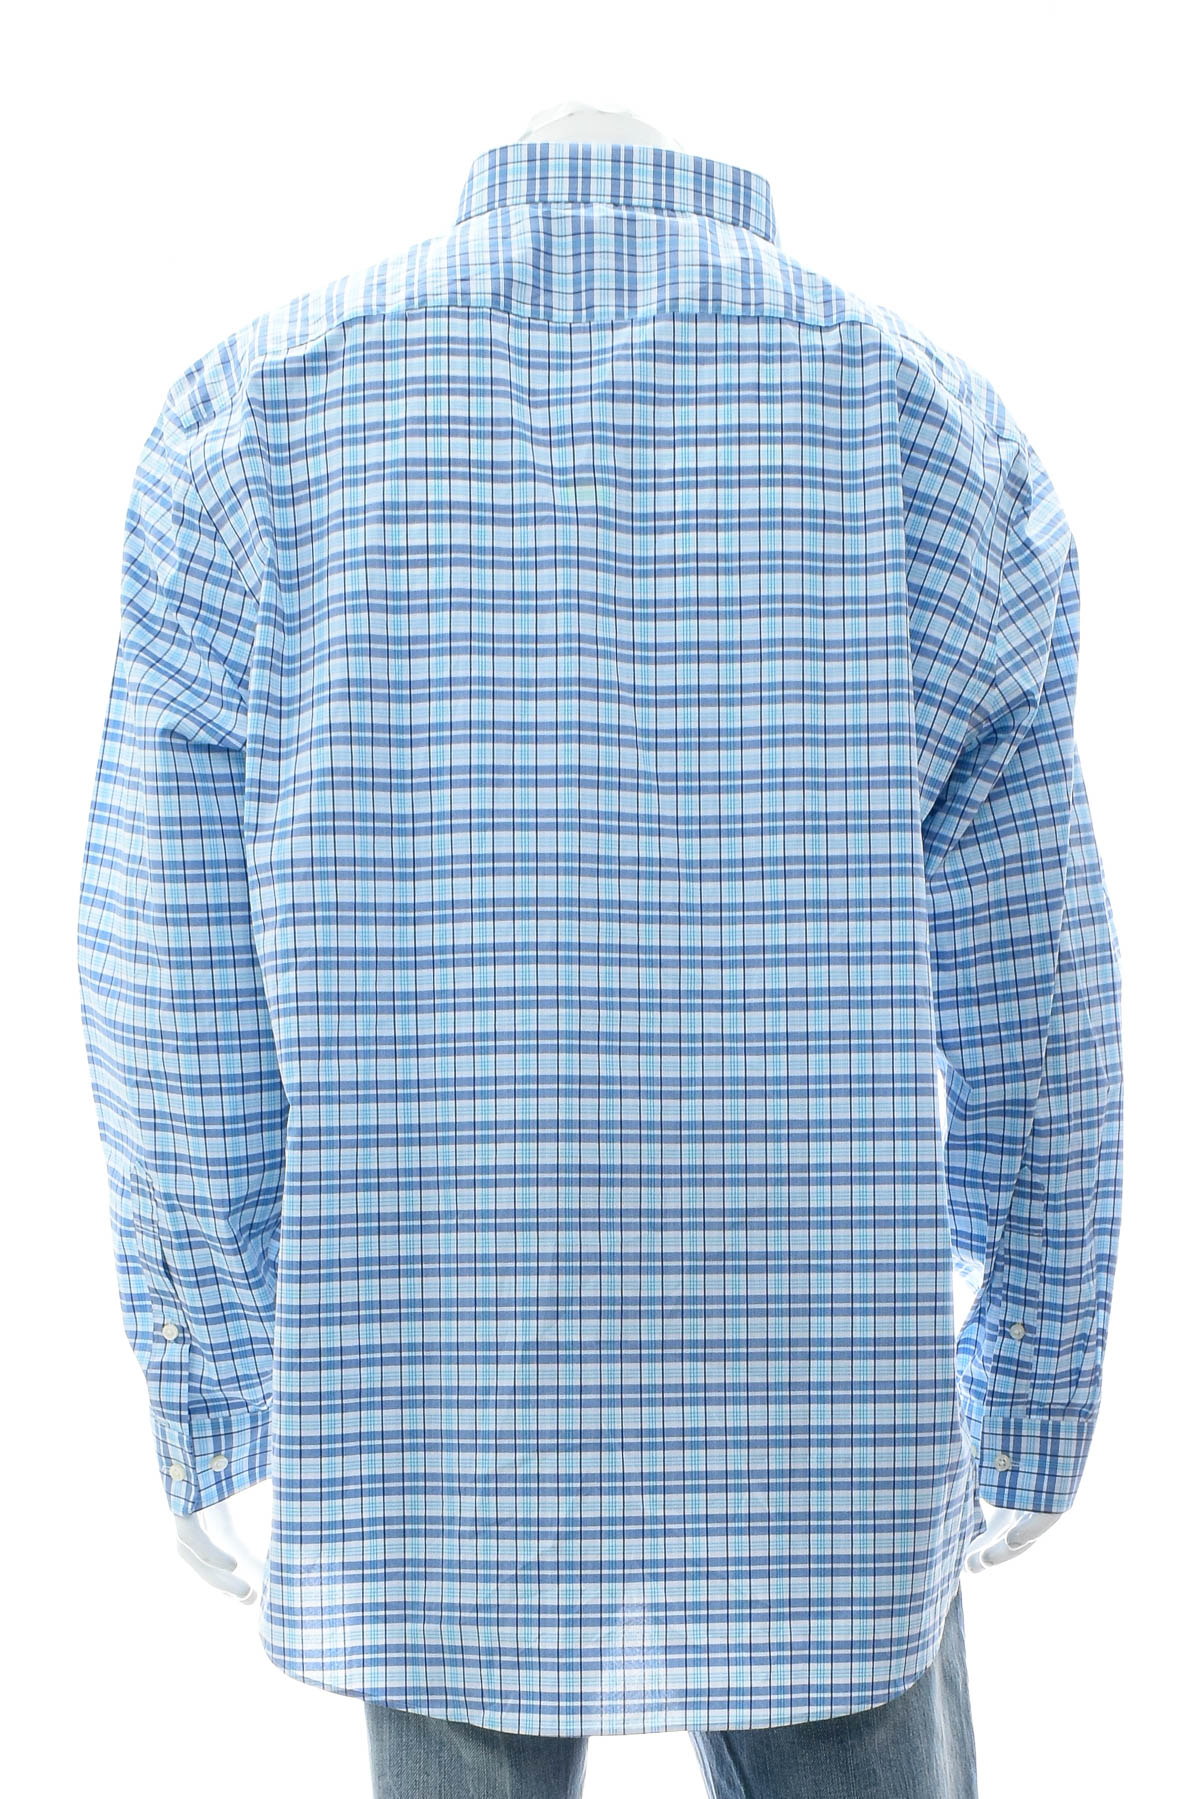 Ανδρικό πουκάμισο - Kirkland Signature - 1